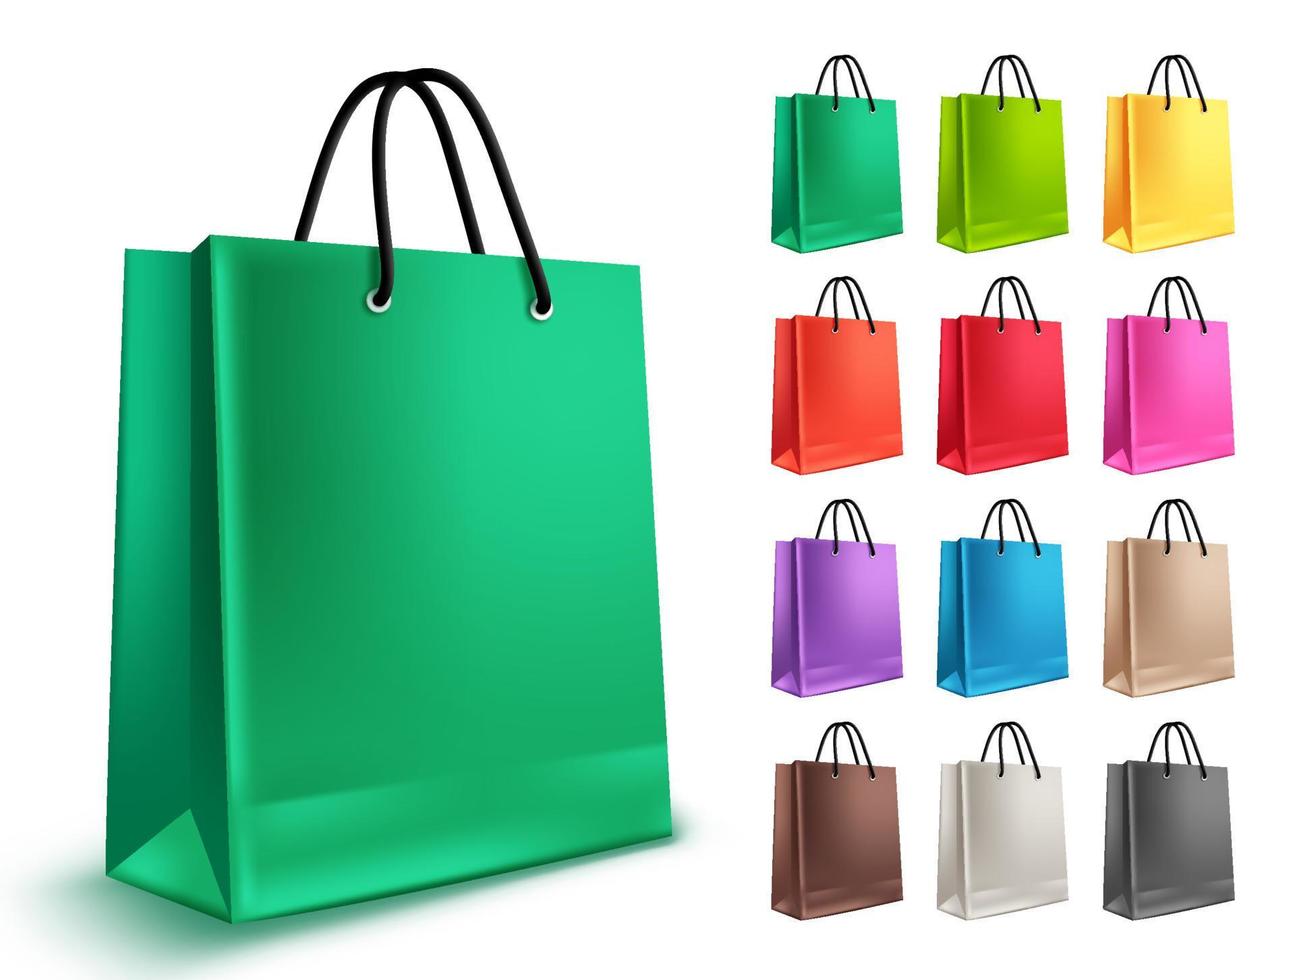 conjunto de vetores de sacolas de compras. sacos de papel vazios com cores verdes e outras, isoladas em branco para elementos de design de compras e mercado. ilustração vetorial.